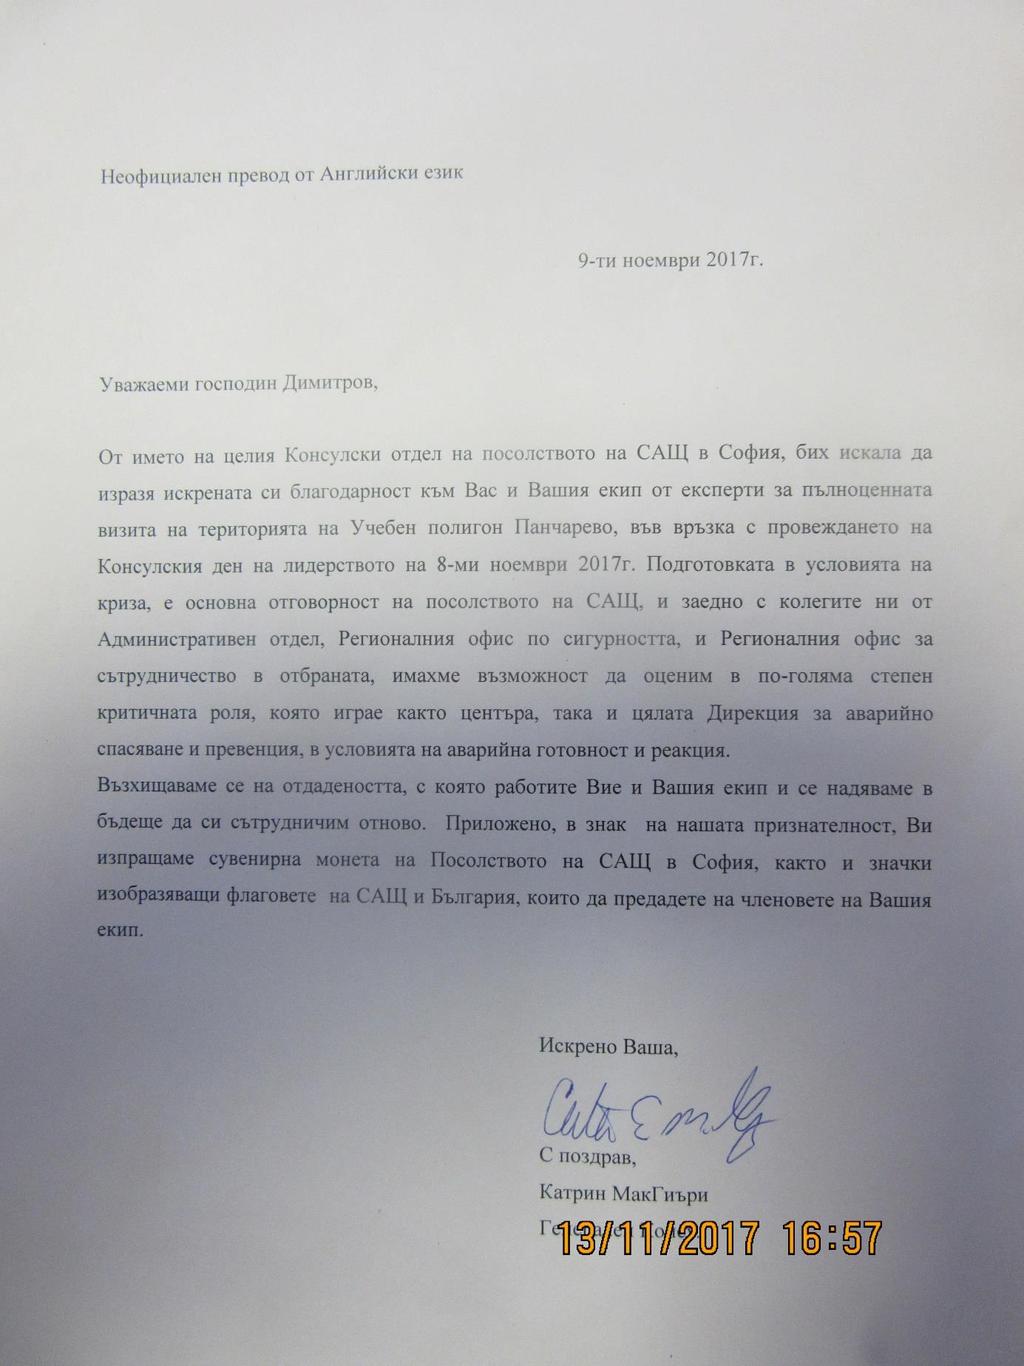 В дирекция Аварийна помощ и превенция е получено благодарствено писмо от Посолството на САЩ в България за образцово проведеното обучение